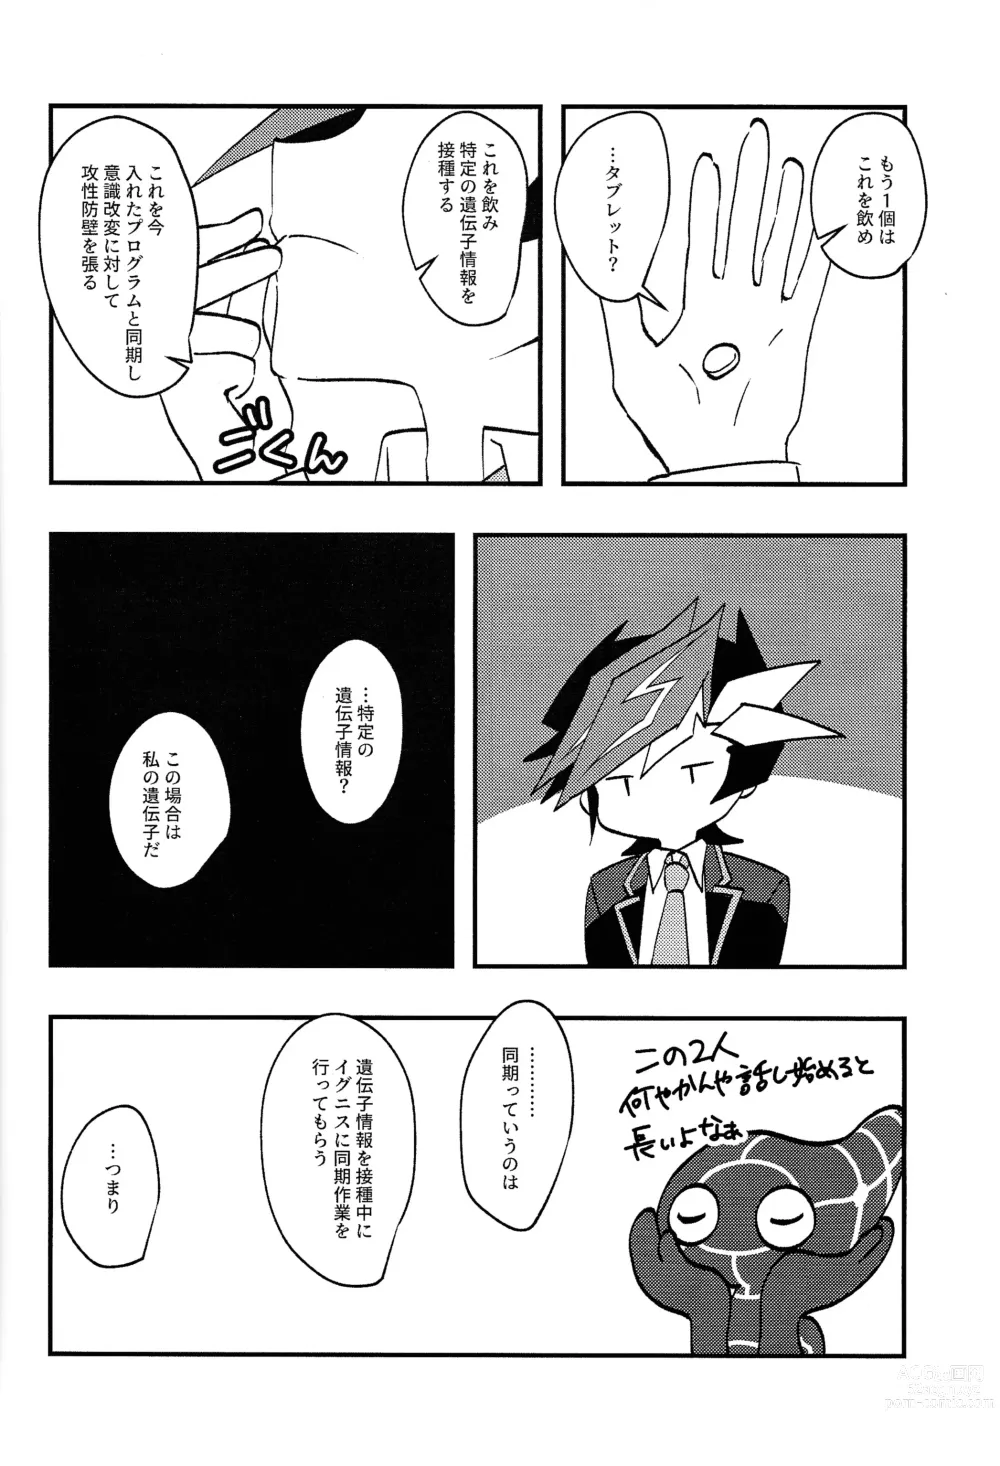 Page 3 of doujinshi Saisho kara ie!!